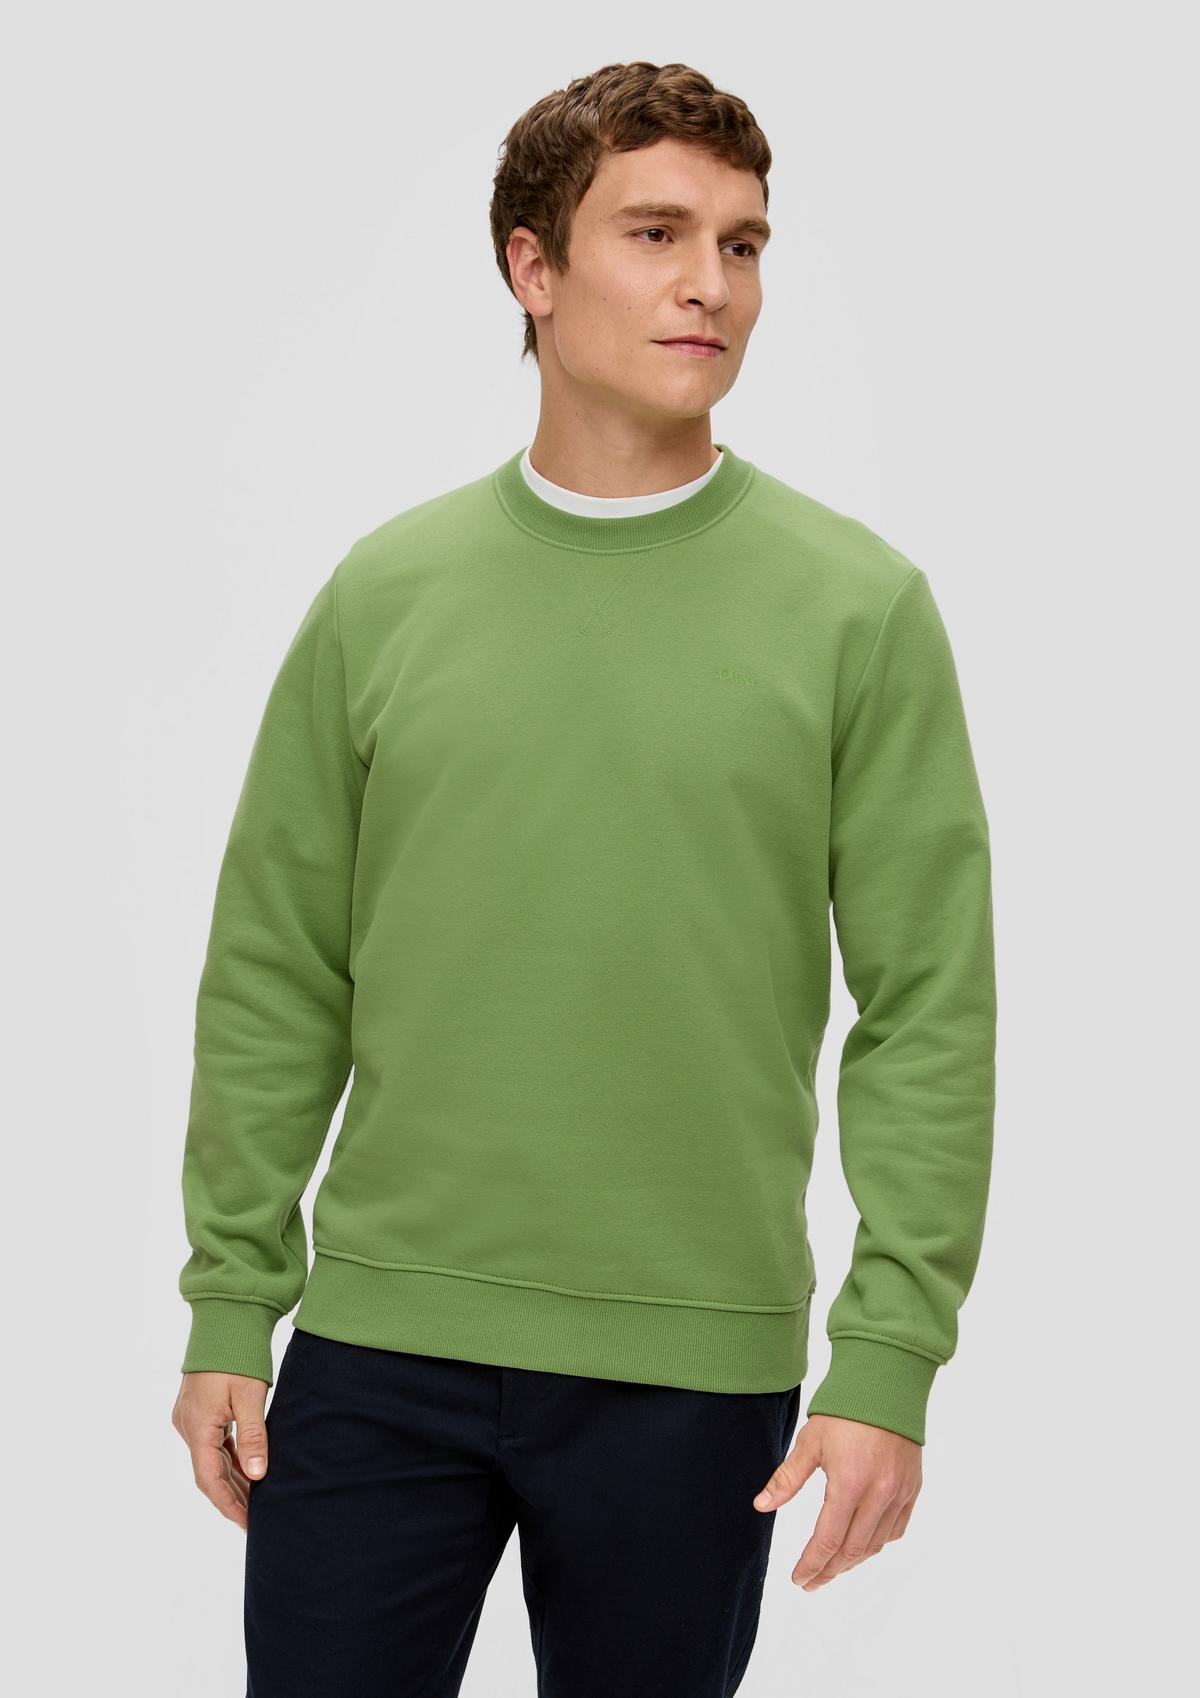 Sweatshirts for Men